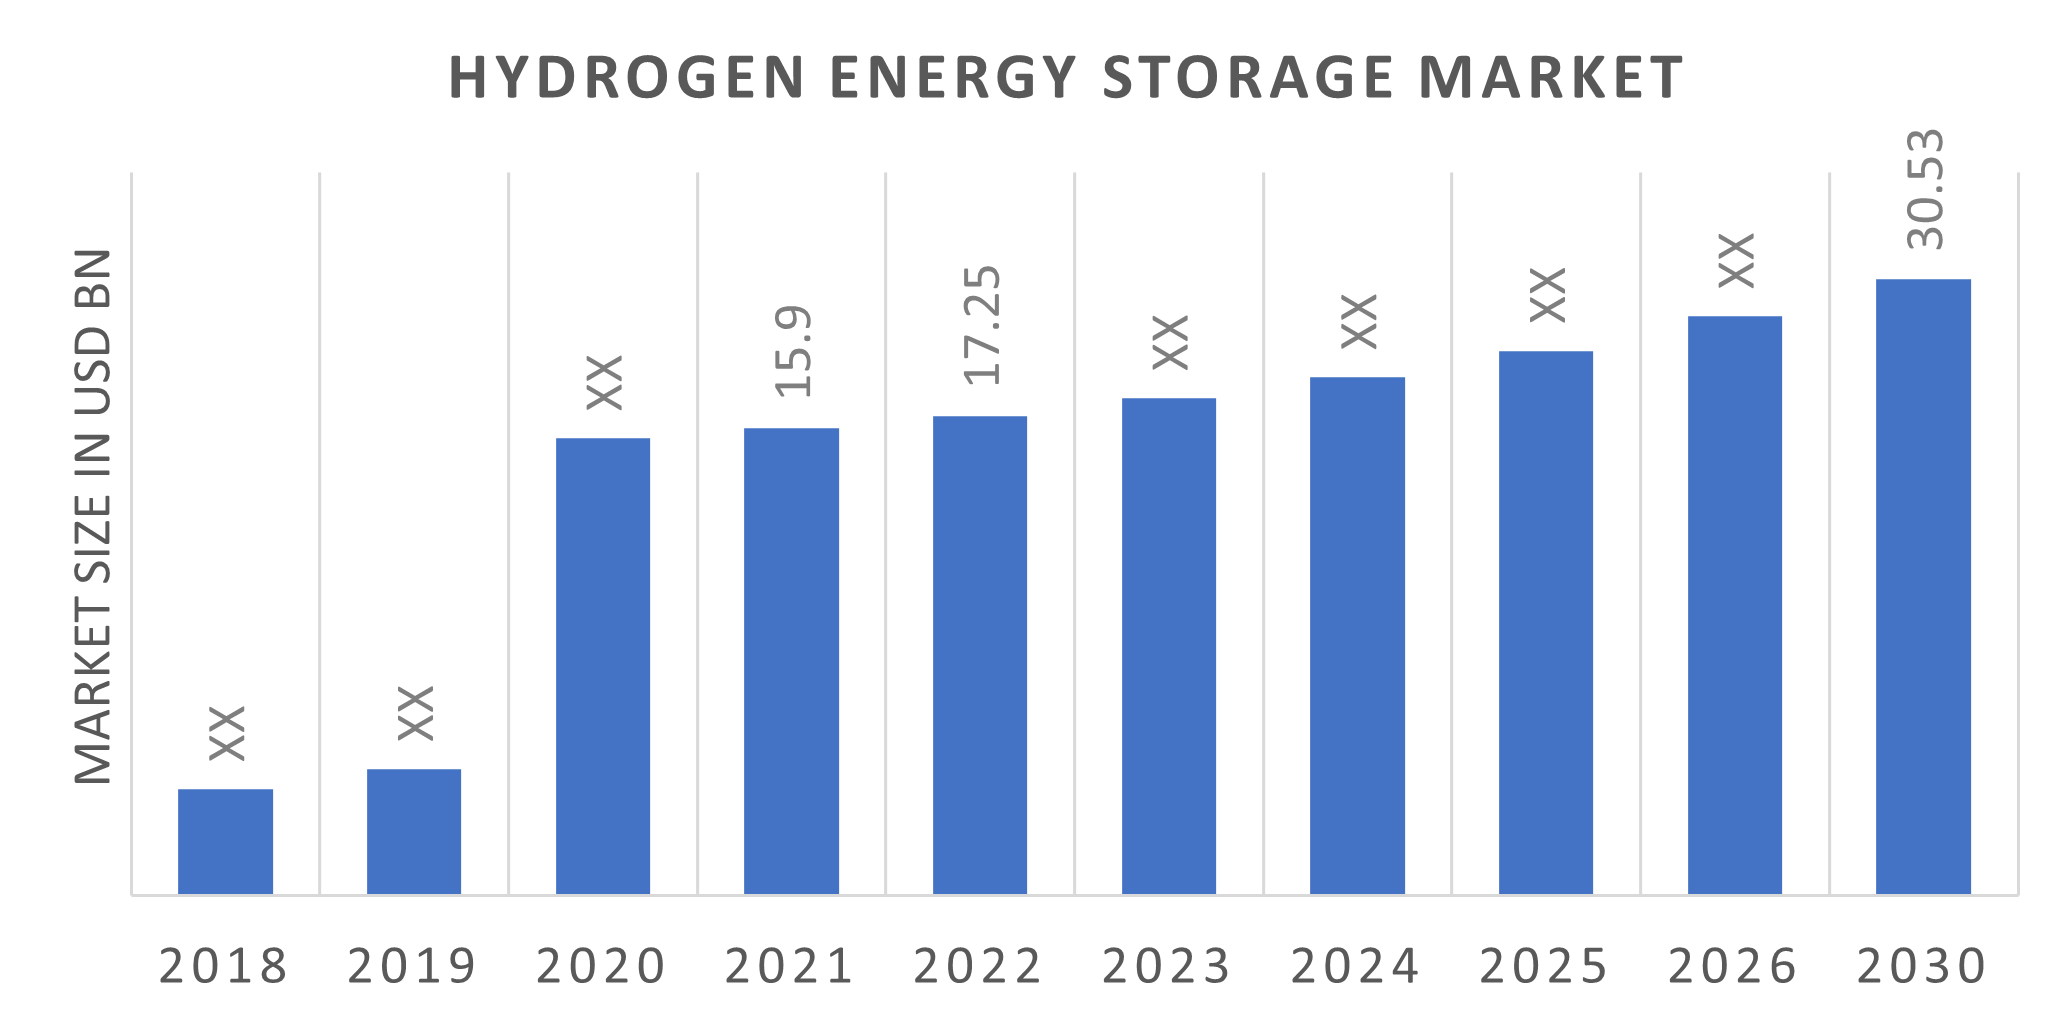 Hydrogen Energy Storage Market Overview